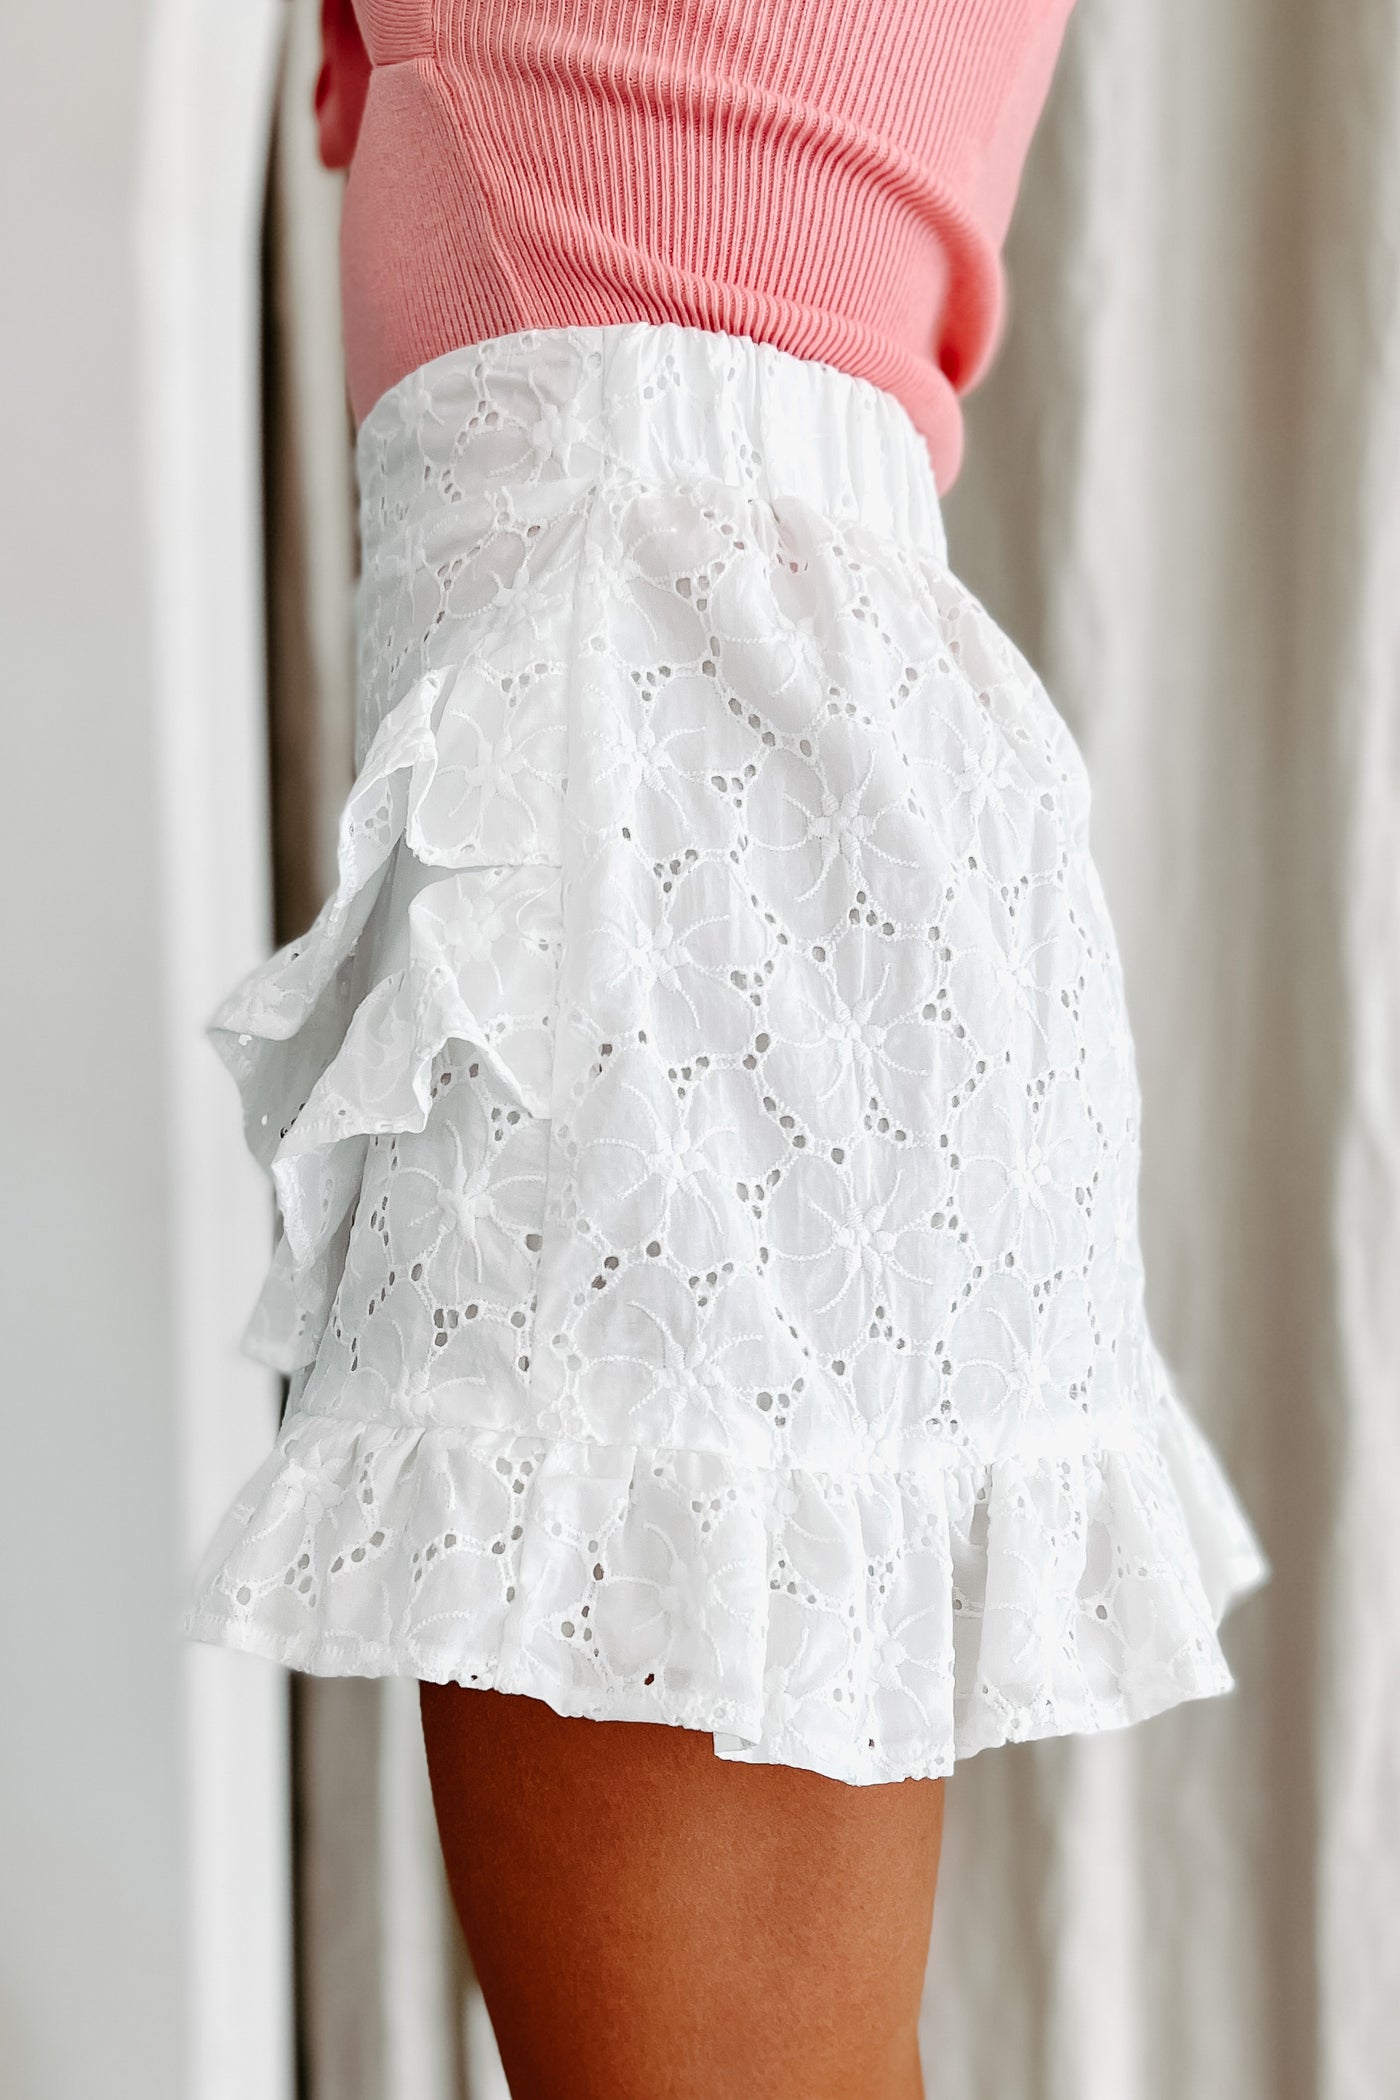 Endless Adoration Ruffled Eyelet Mini Skirt (White) - NanaMacs